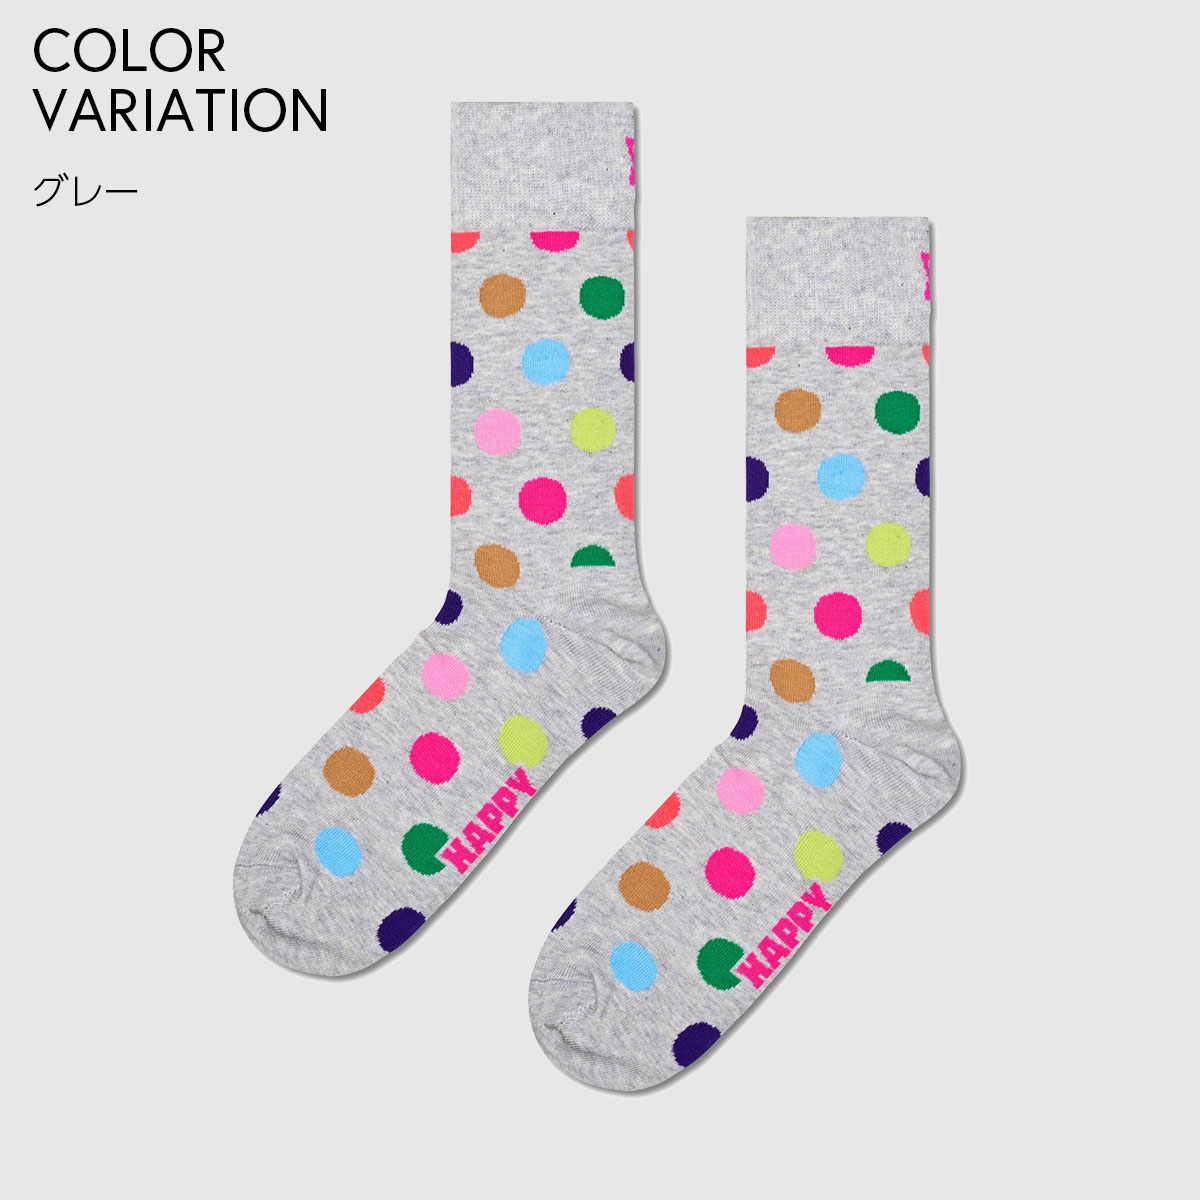 【24SS】Happy Socks ハッピーソックス Big Dot ( ビッグ ドット ) クルー丈 ソックス ユニセックス メンズ ＆ レディス 10240100